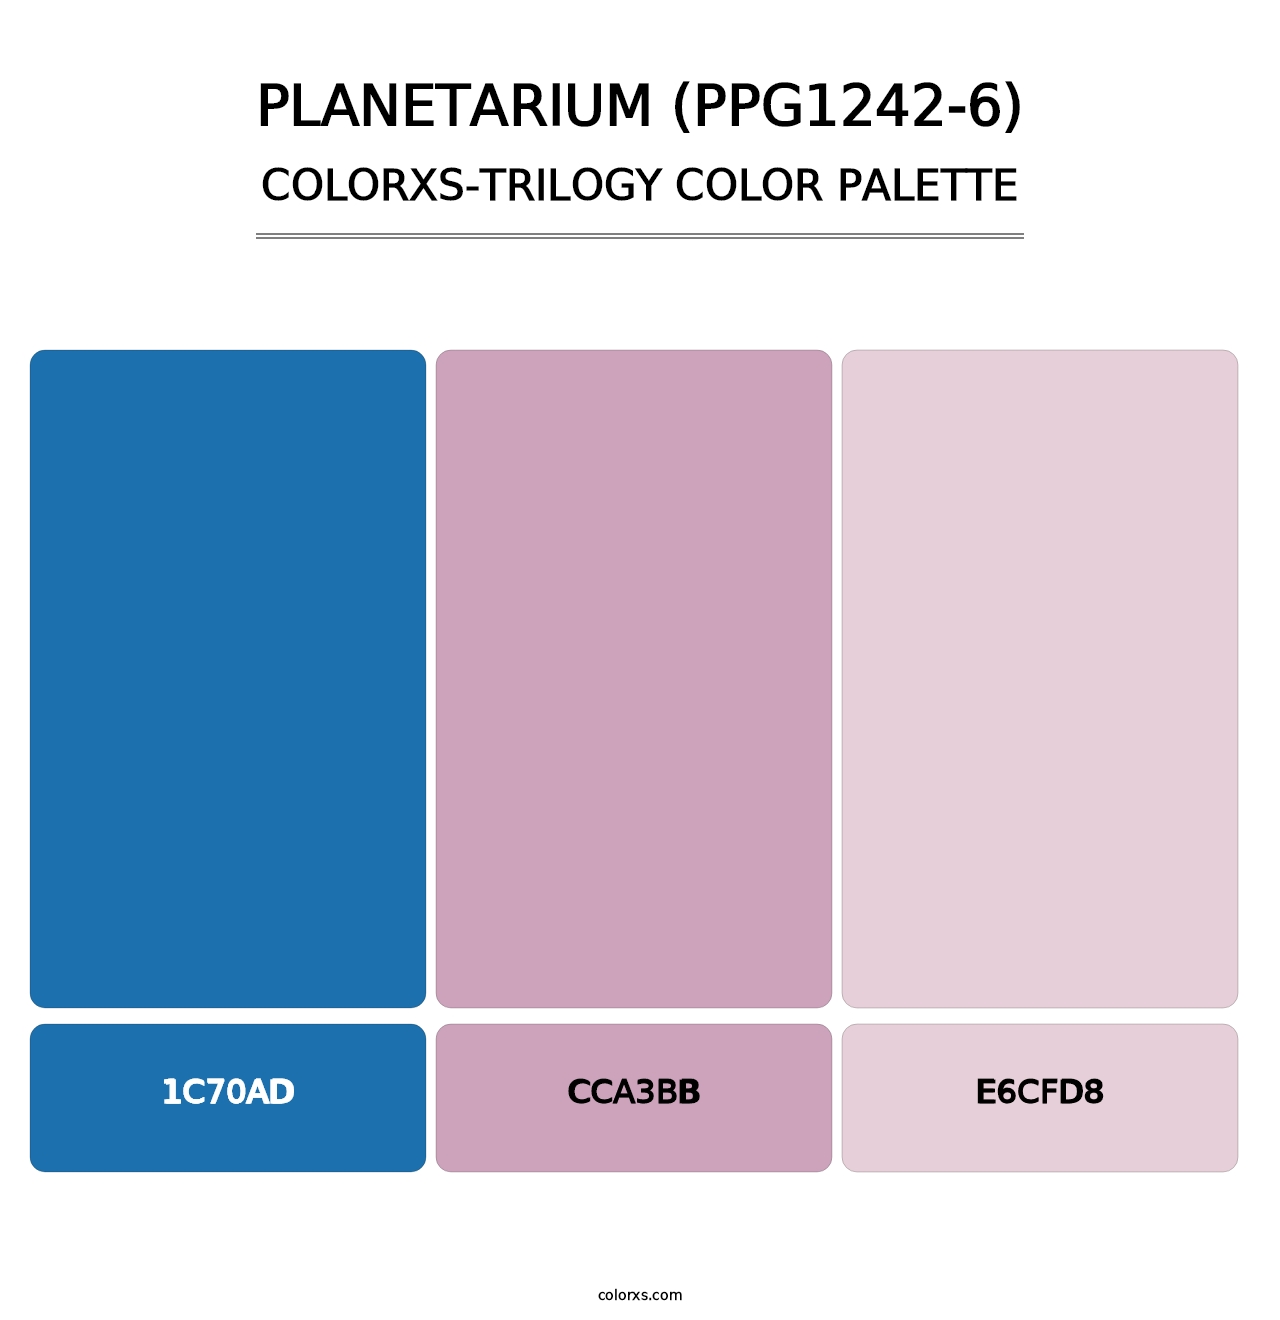 Planetarium (PPG1242-6) - Colorxs Trilogy Palette